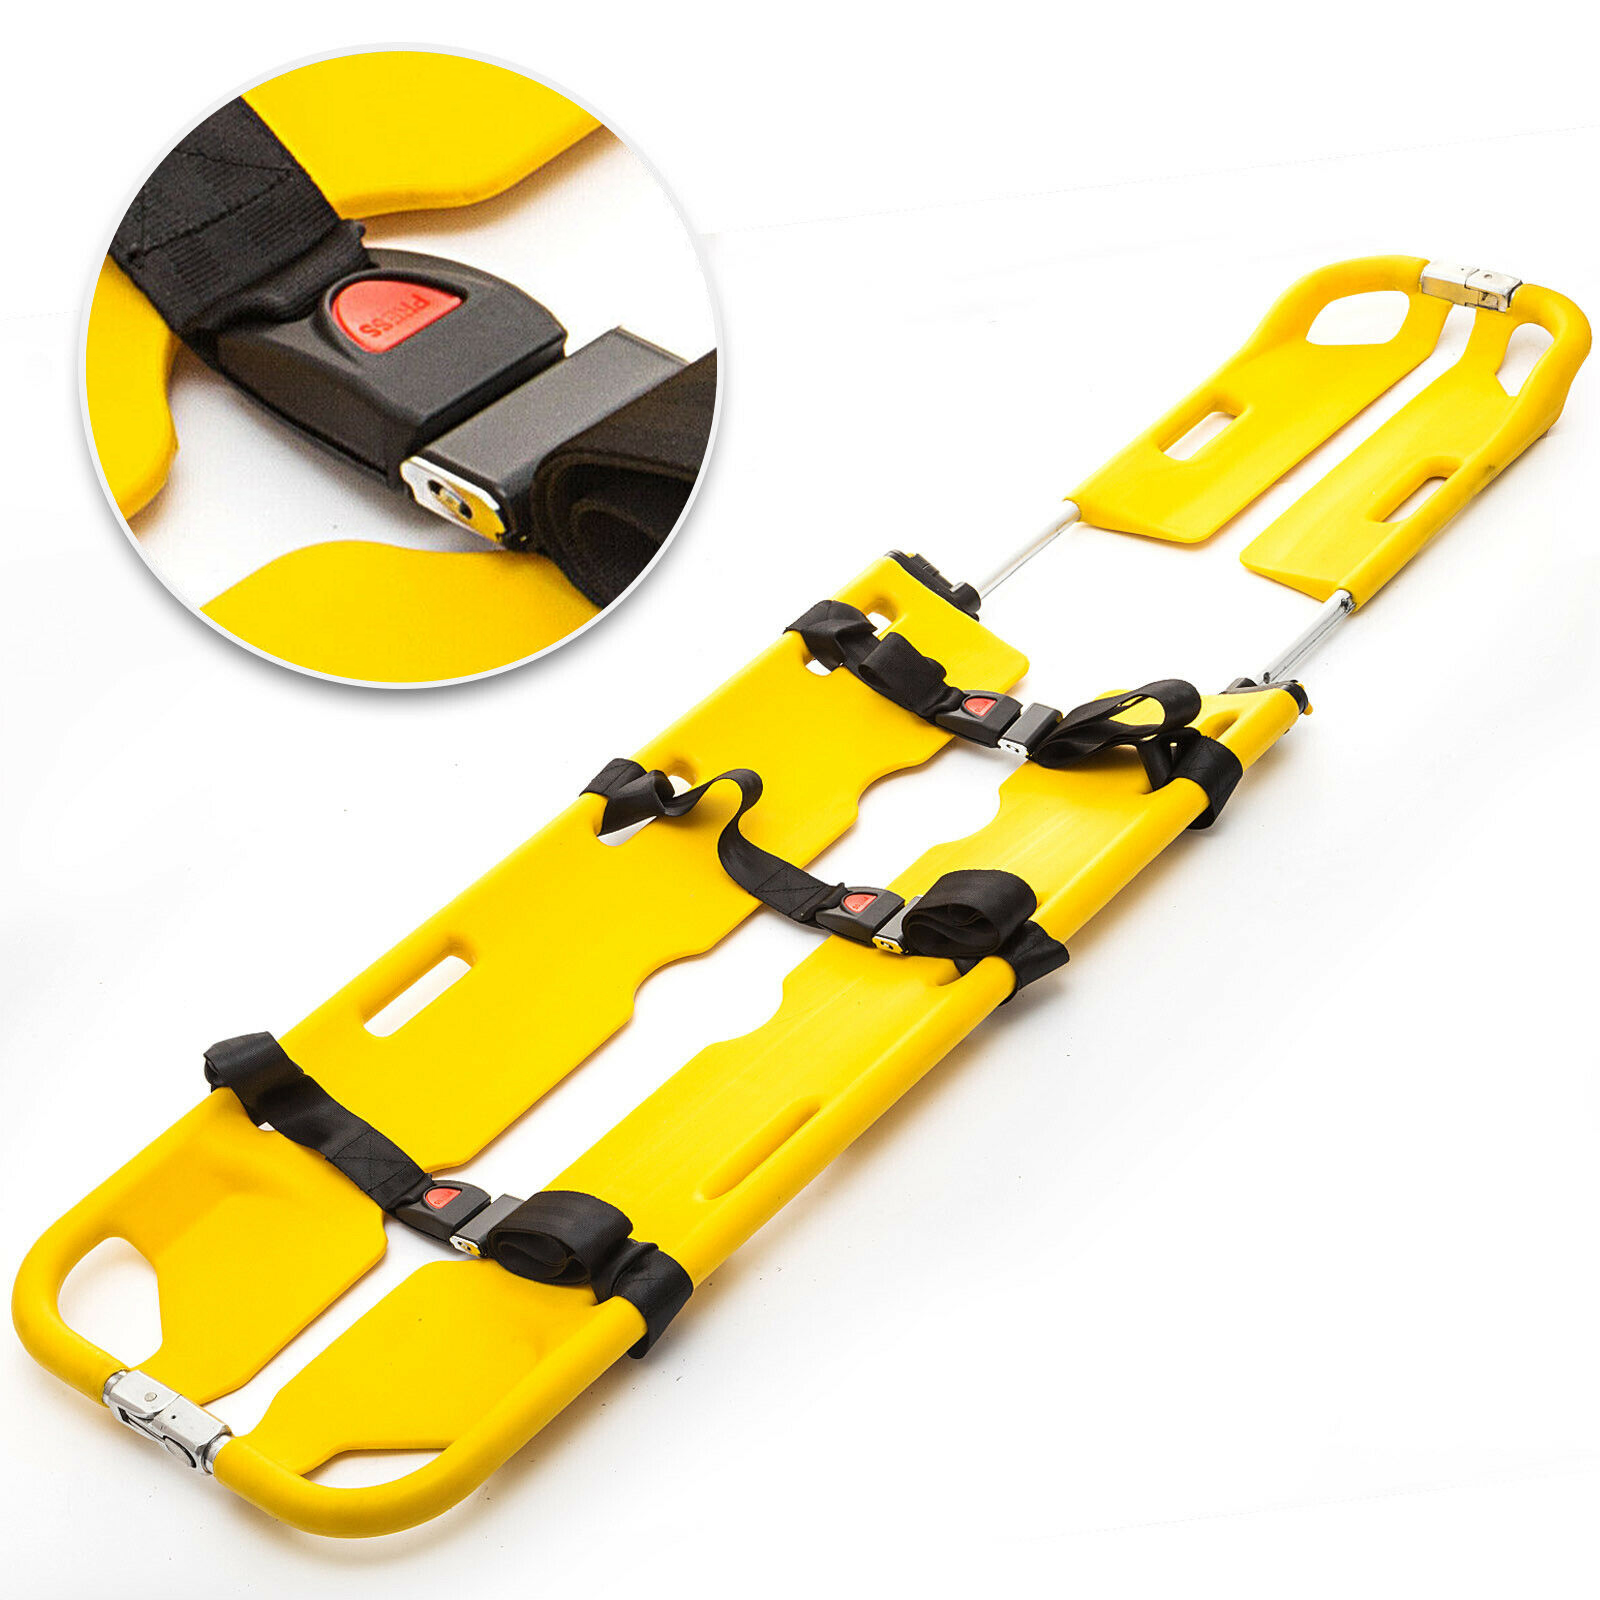 EMT Backboard Spine Board Stretcher Immobilization Kit Emergency Scoop Stretcher от Vevor Many GEOs